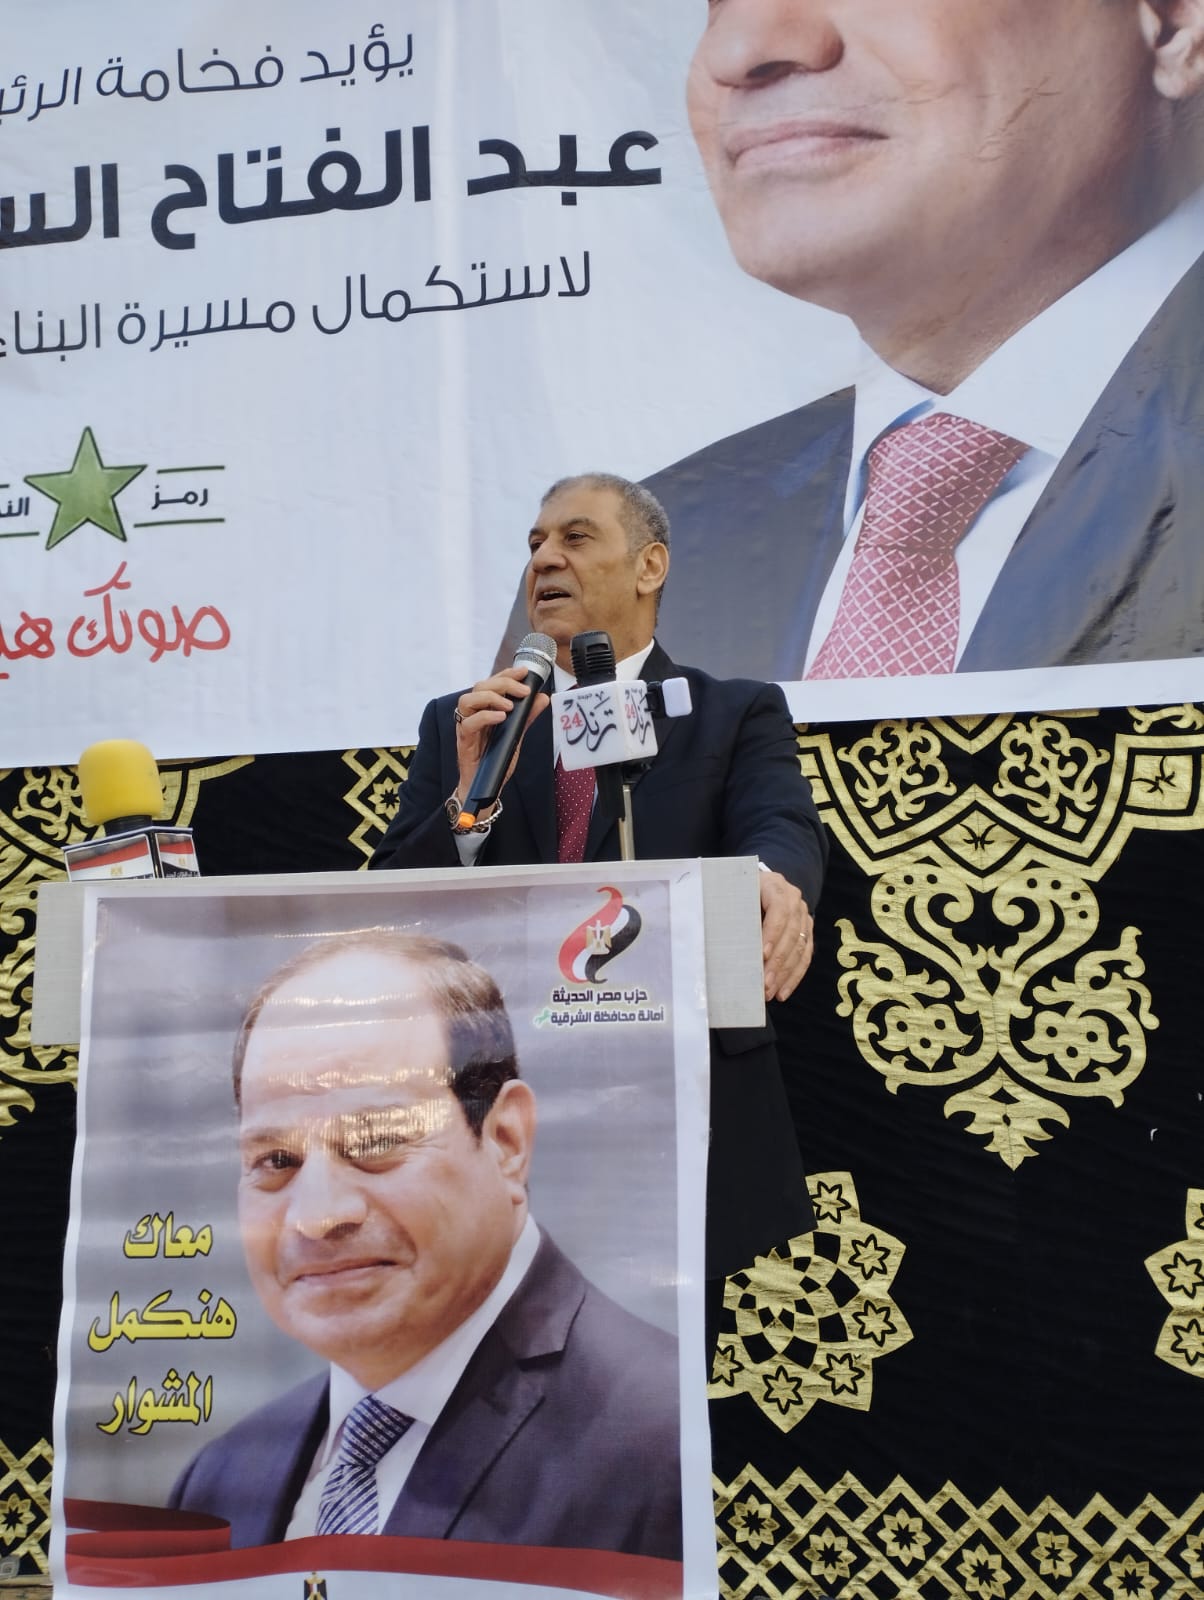 اعضاء حزب مصر الحديثة